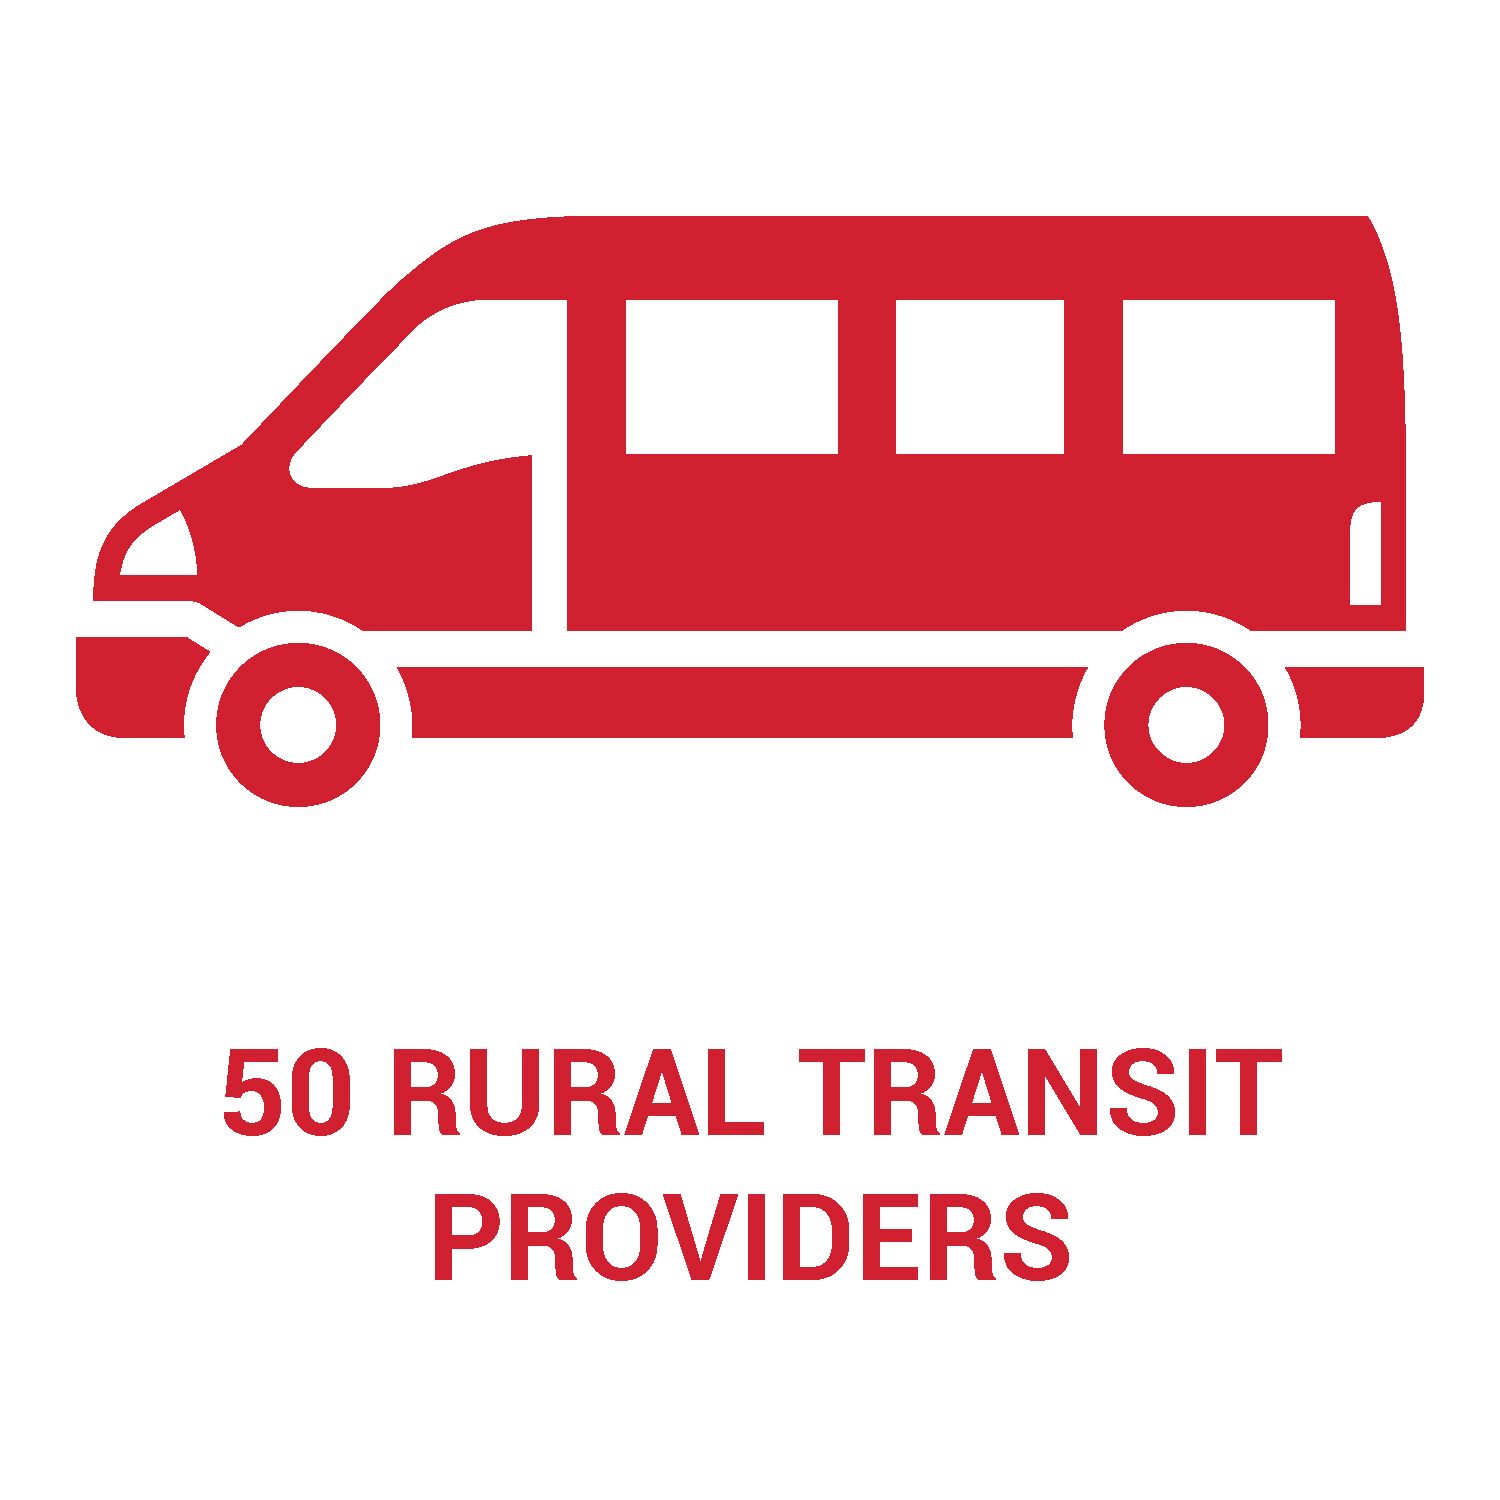 there are 50 rural transit providers in Nebraska